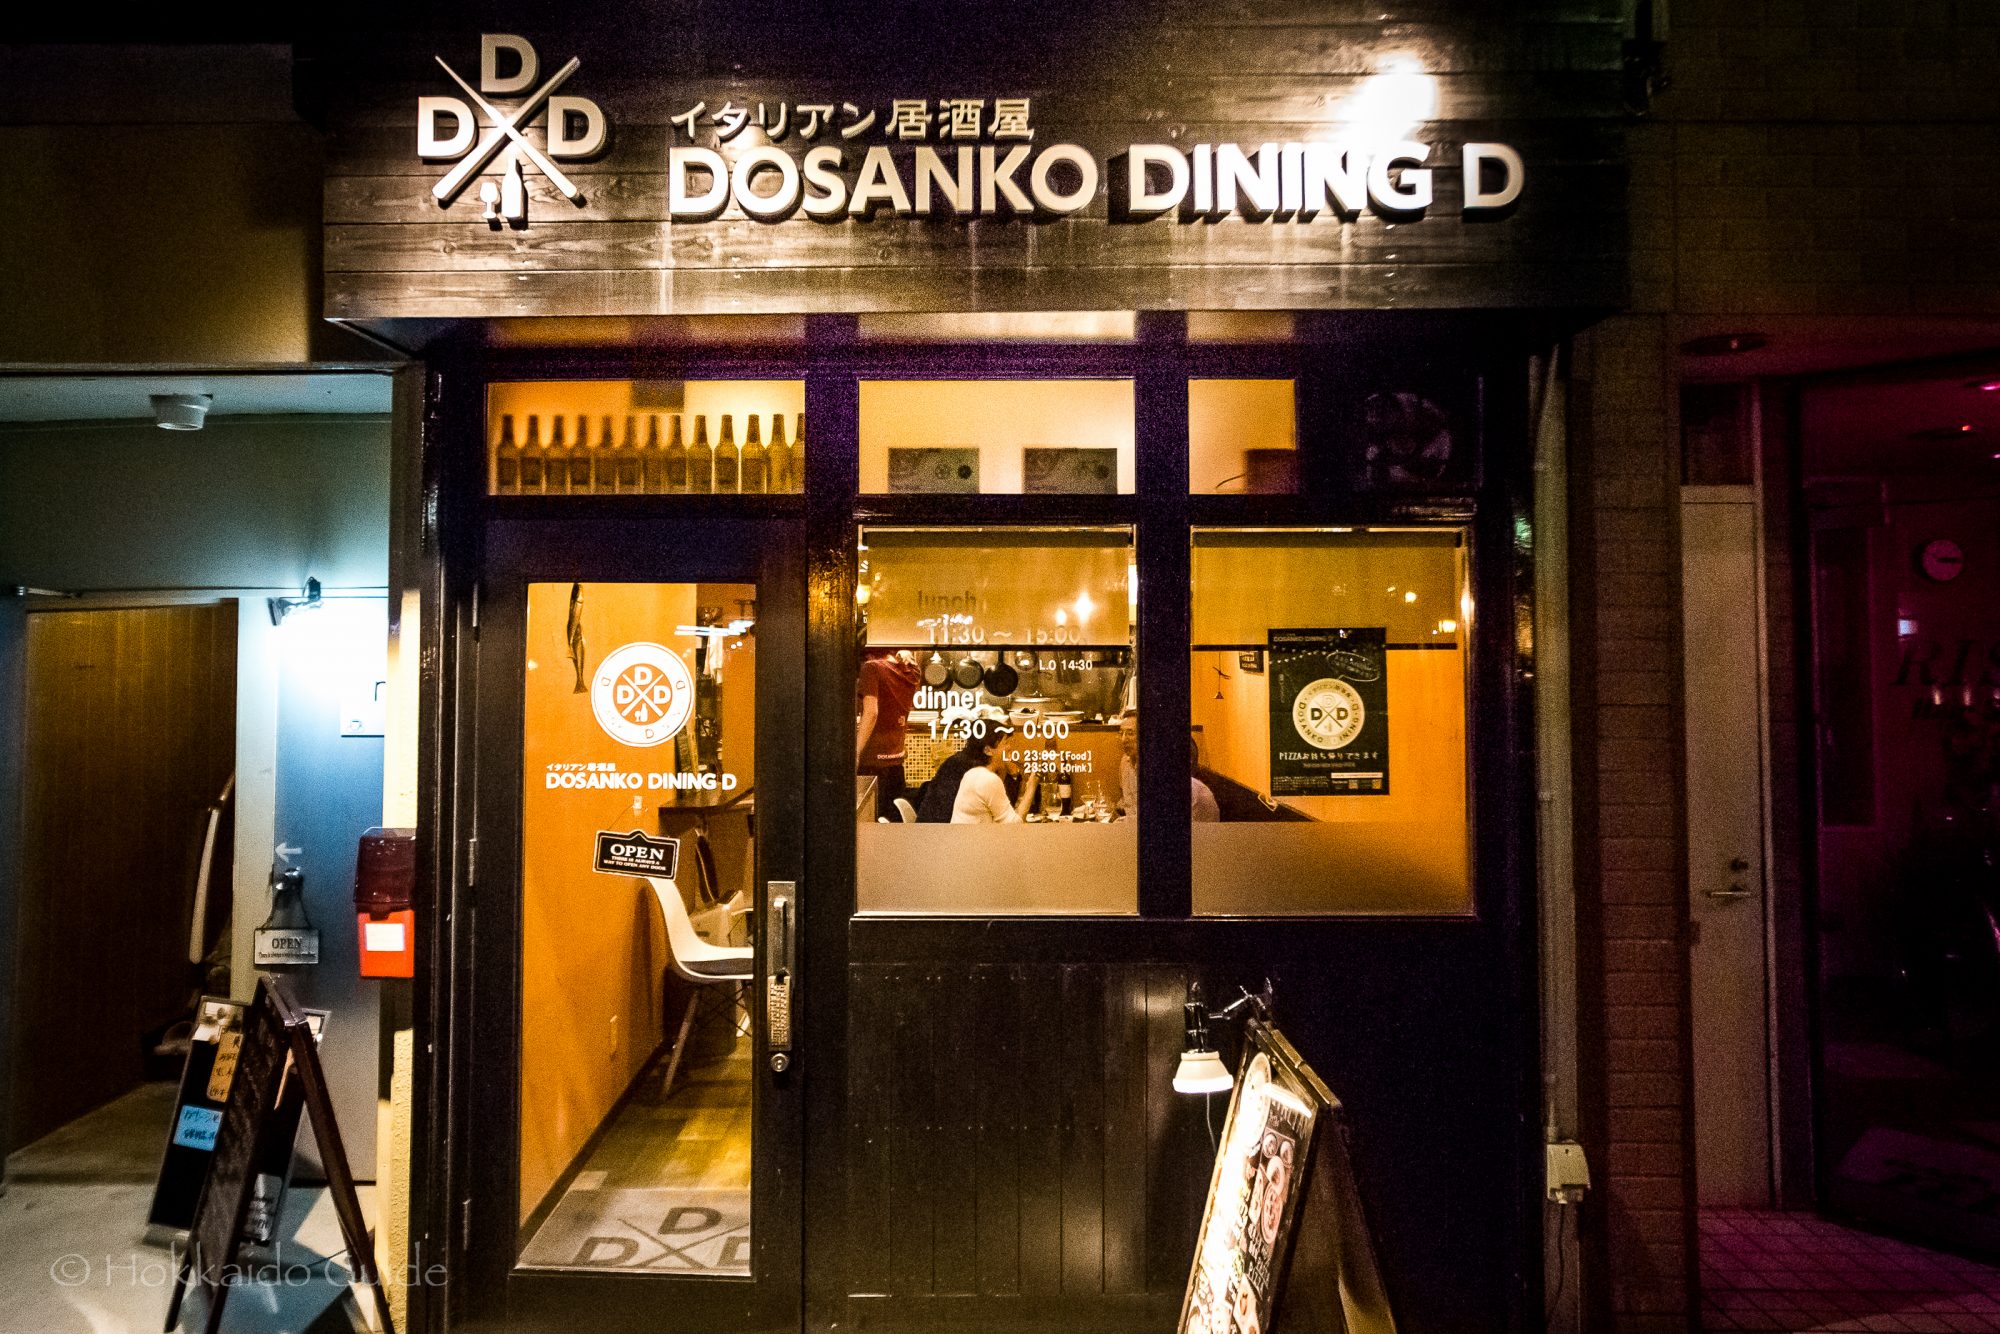 イタリアン居酒屋 DOSANKO DINING D ドサンコ ダイニング